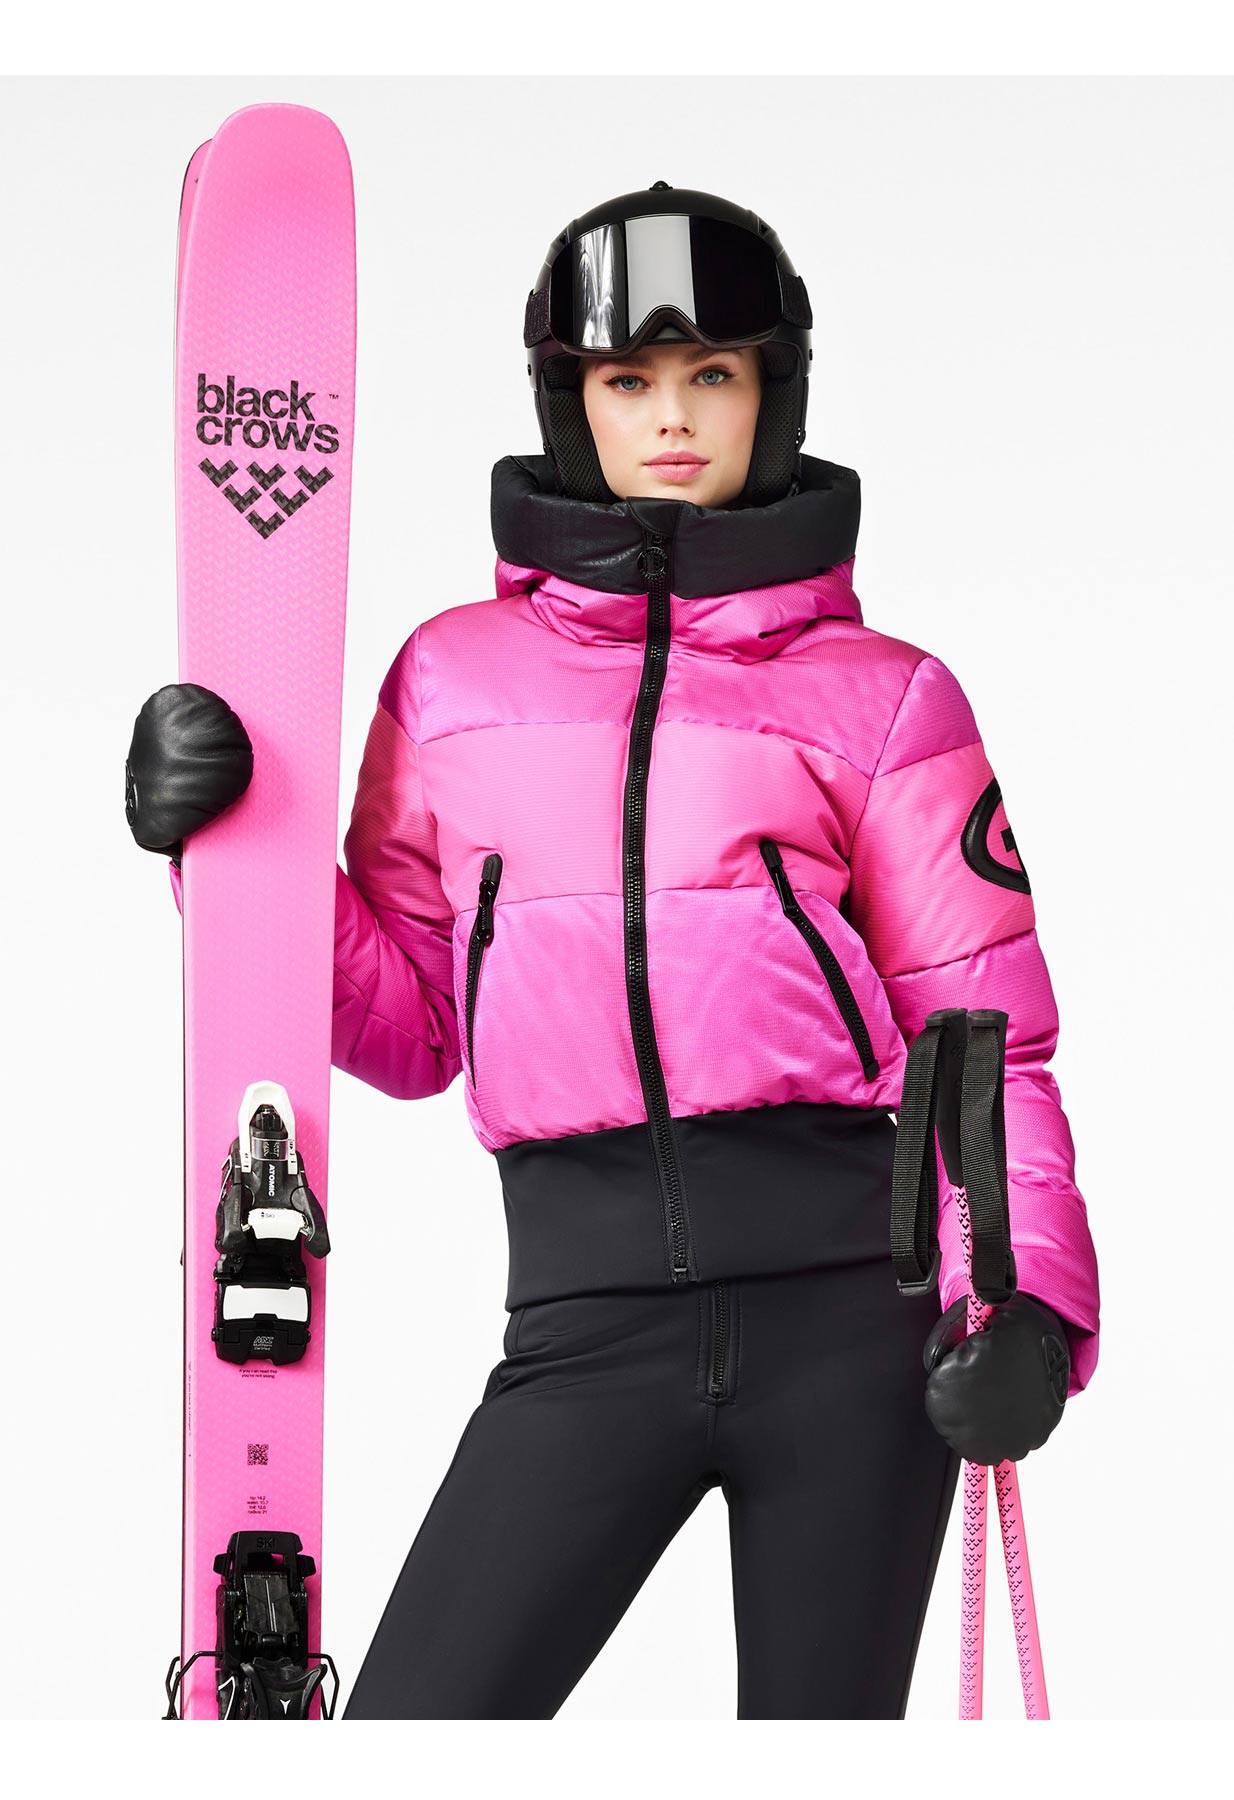 Goldbergh Fever Downfilled Bomber Ski Jacket in Pink